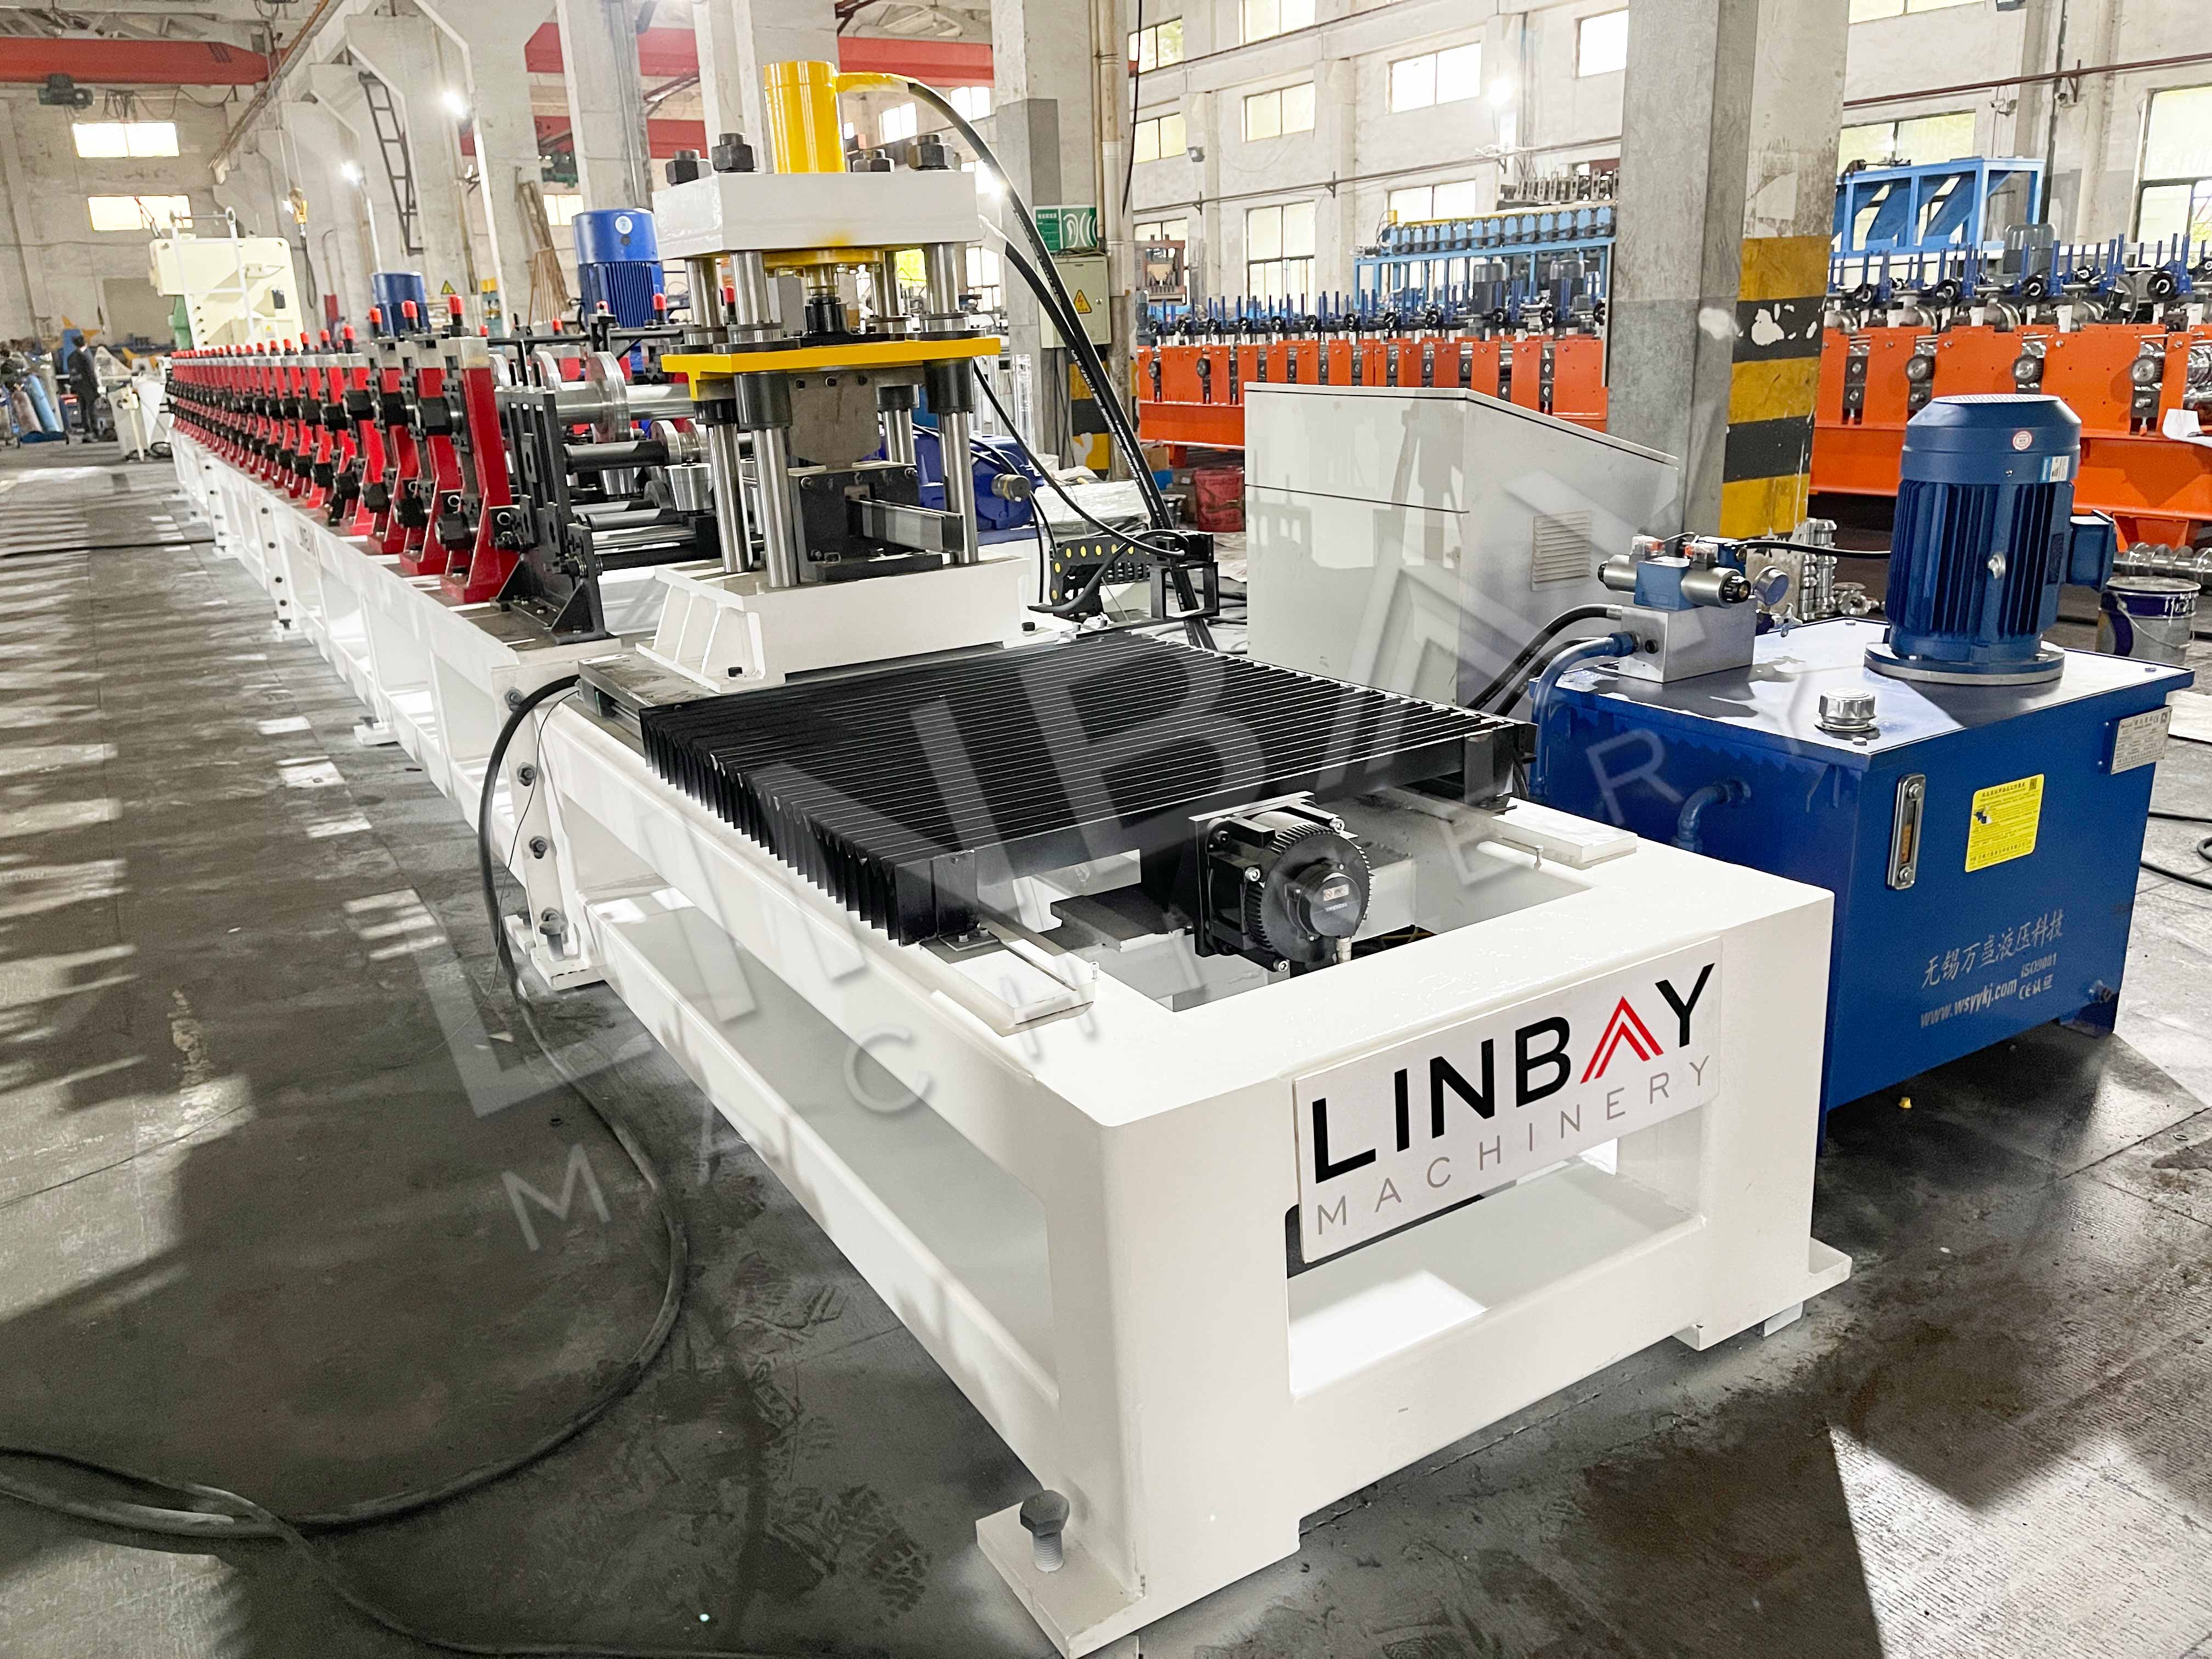 LINBAY-Exporta Máquina Conformadora e Máquina de Corte Longitudinal para o Iraque